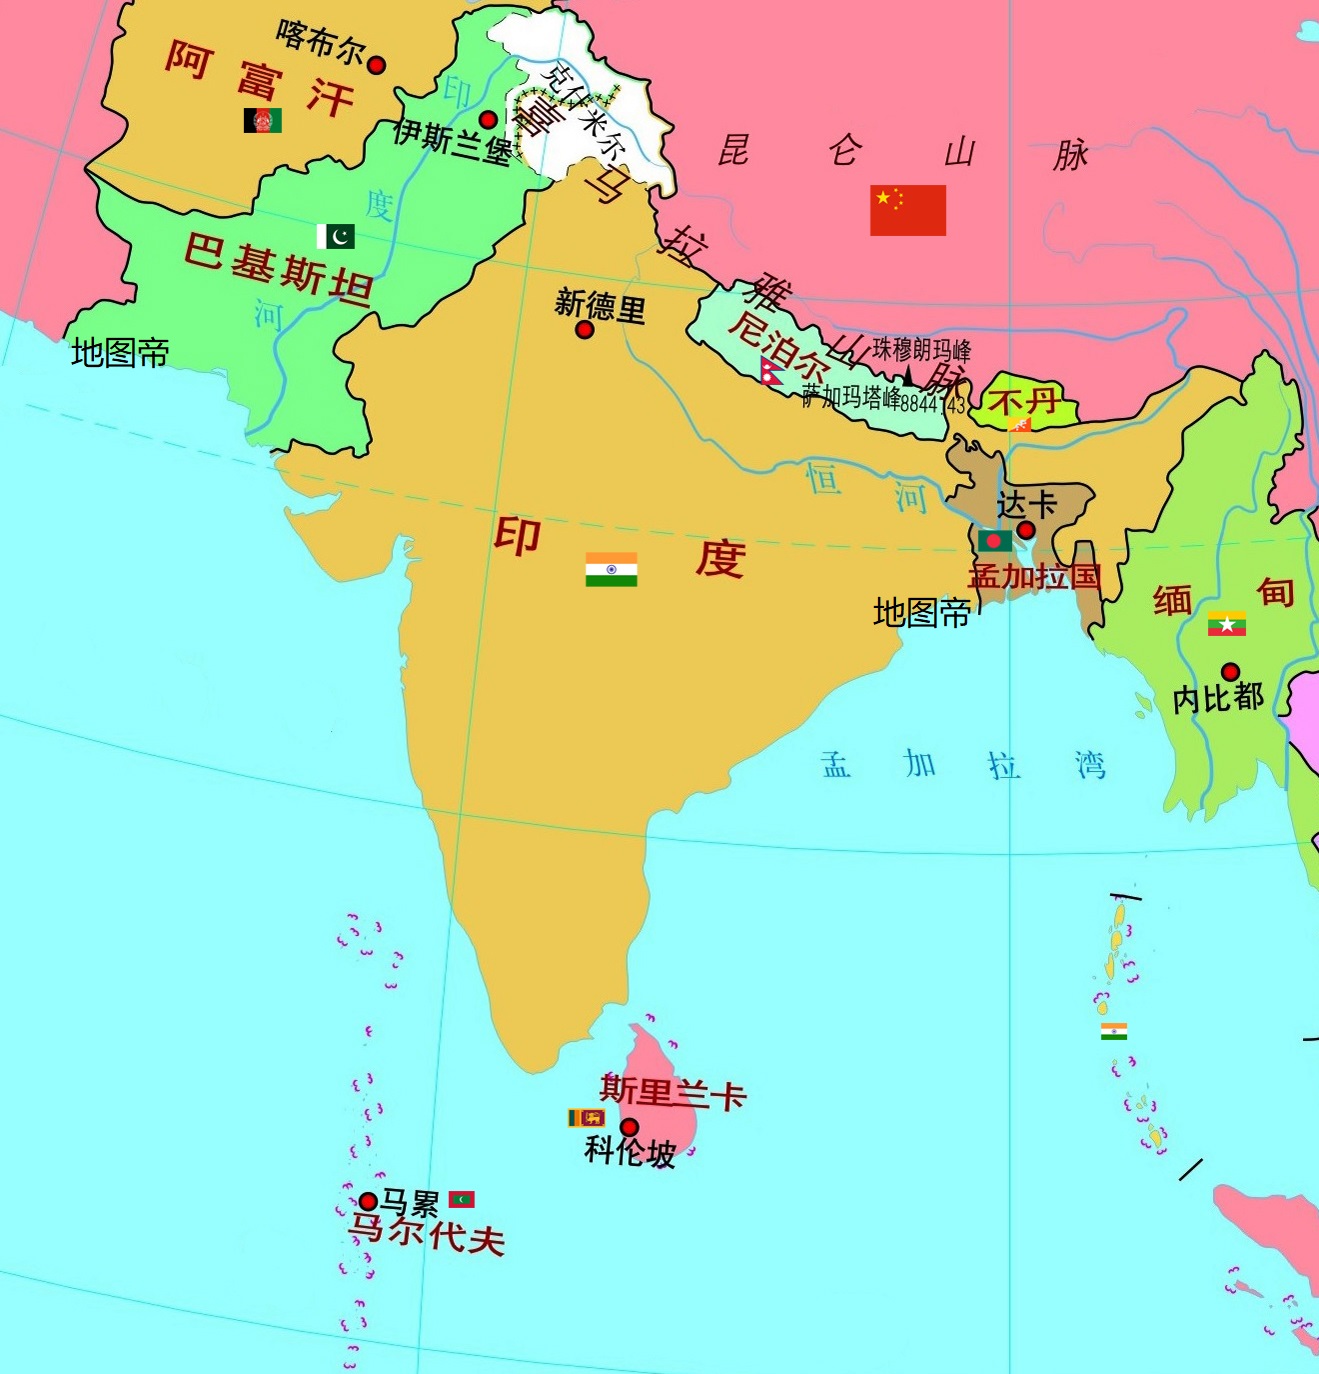 24亿,南亚次大陆最大国家. 印度东南方向,有一个岛国,名为斯里兰卡.